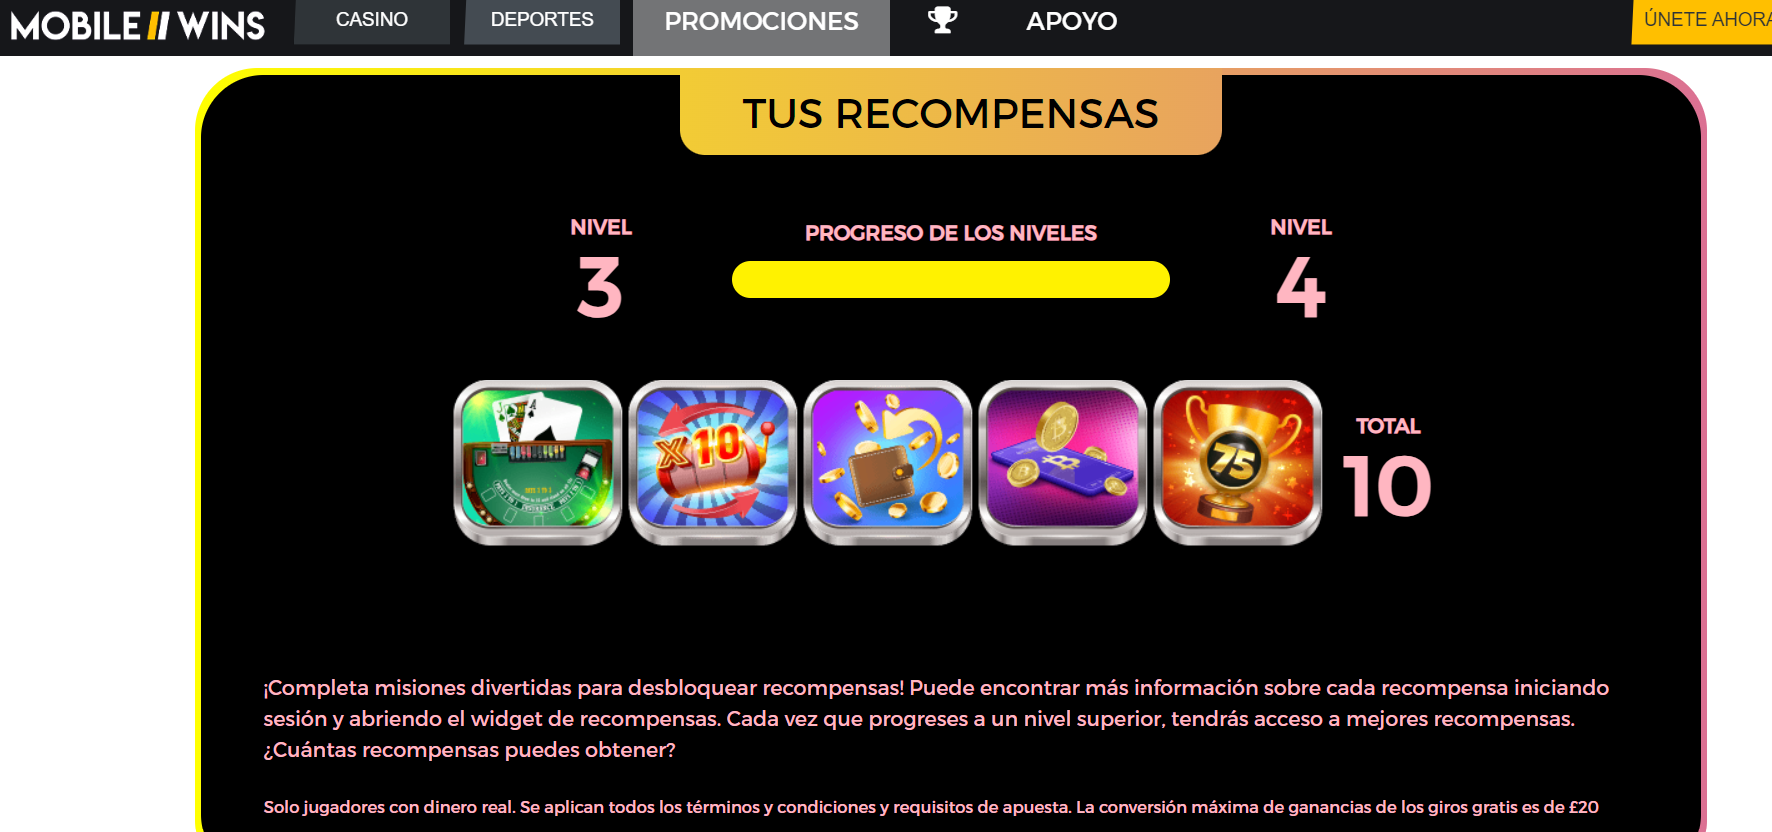 Imagen que muestra el sistema de recompensas en Mobile Wins Perú